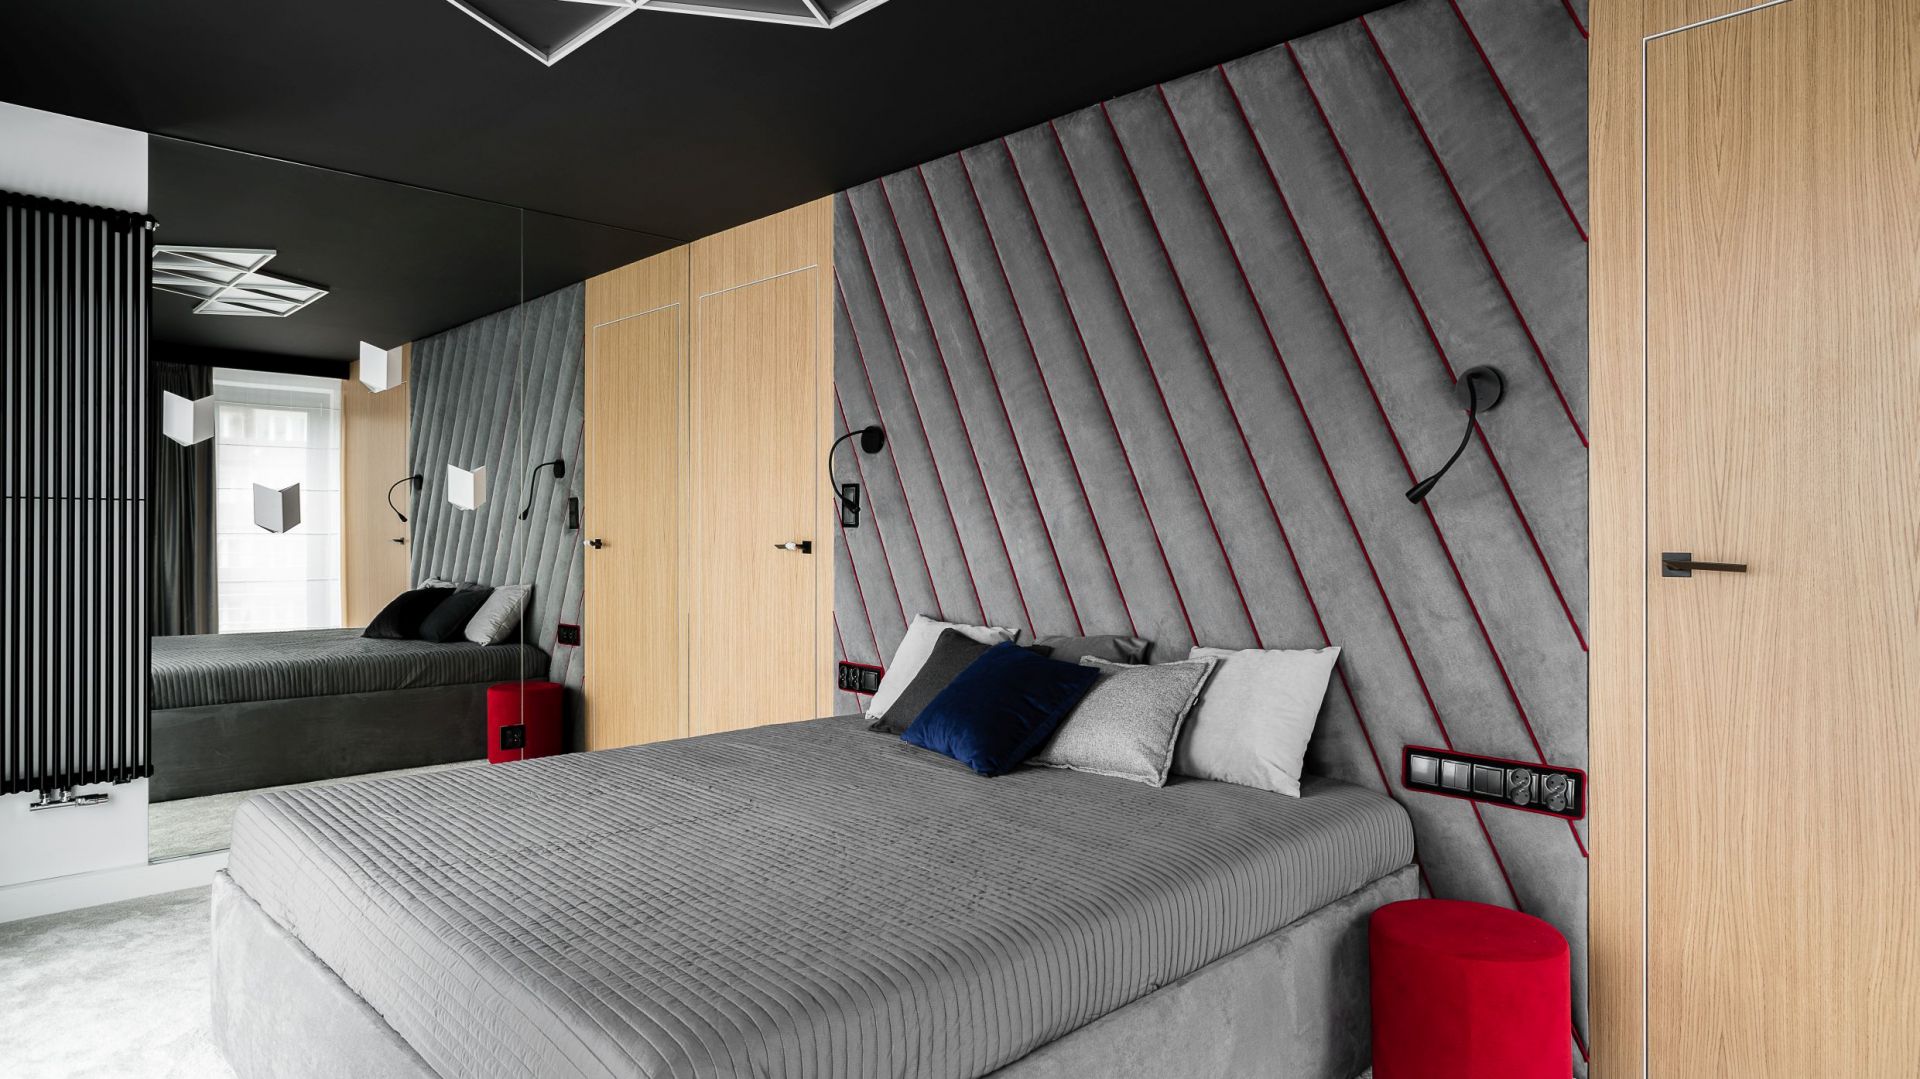 Ściana za łóżkiem w sypialni: 15 pięknych wnętrz. Zobacz zdjęcia!